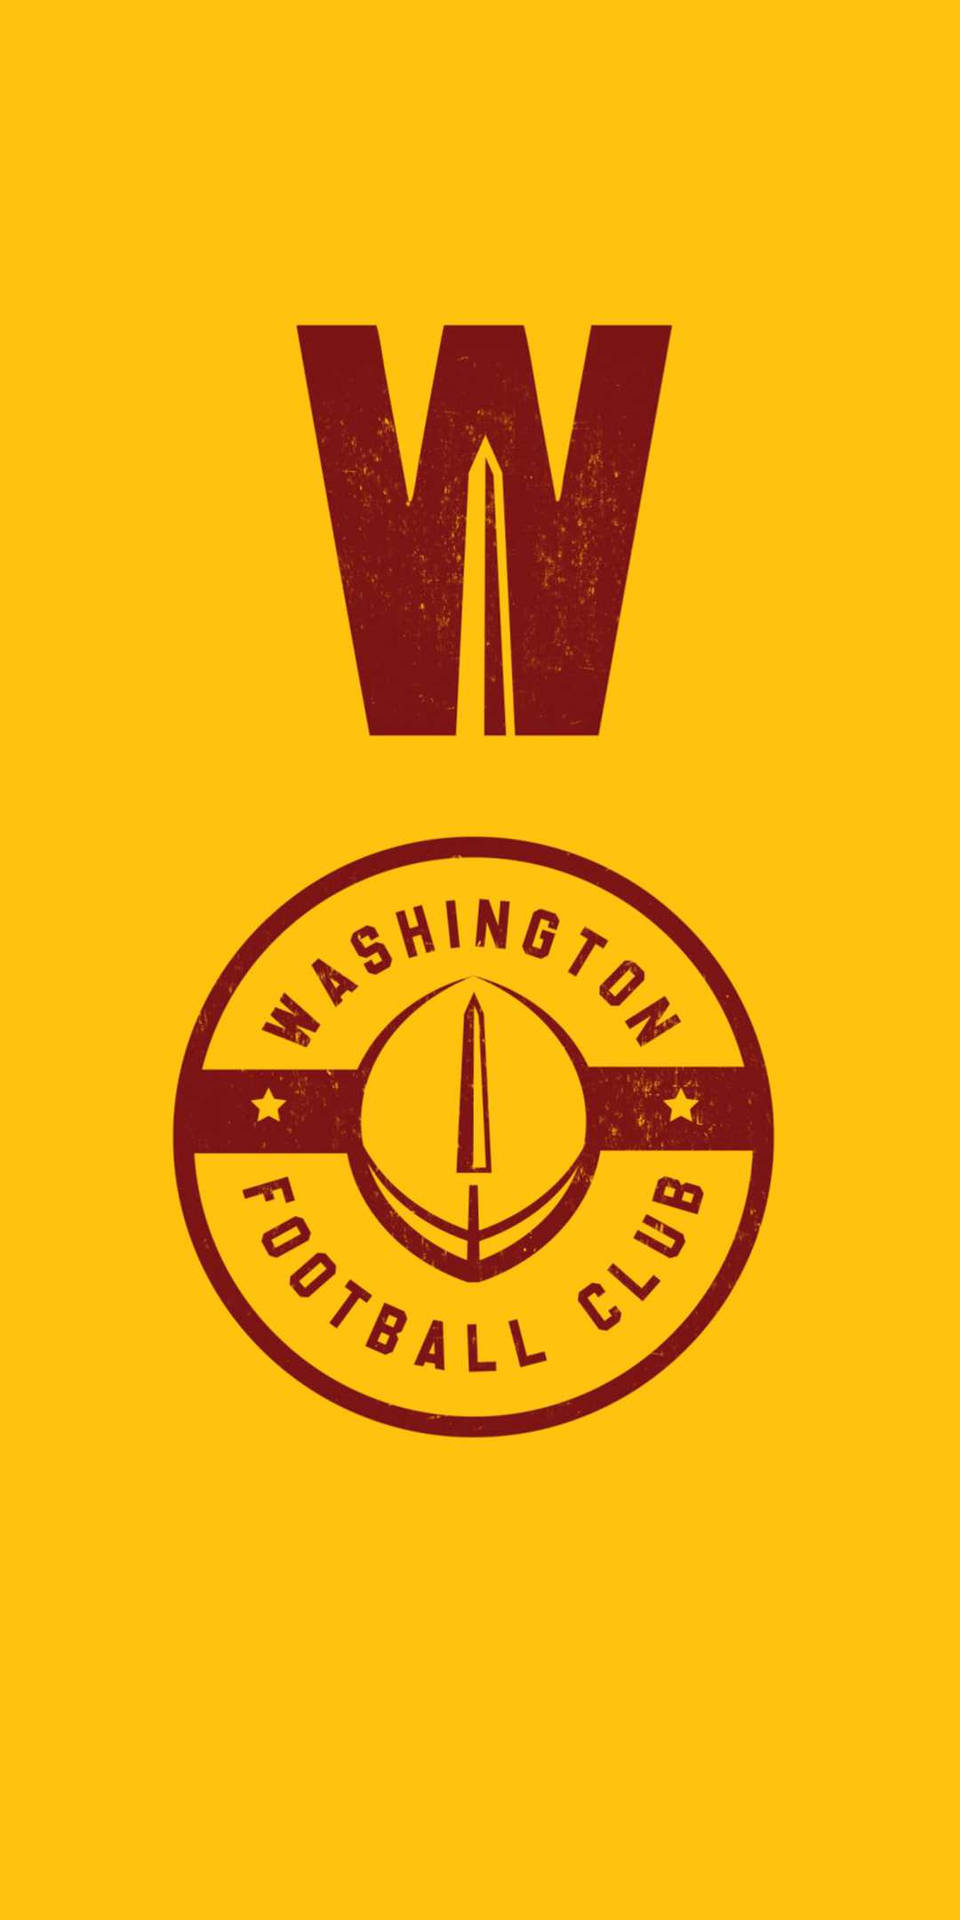 Washington Commanders Football Club Wallpaper